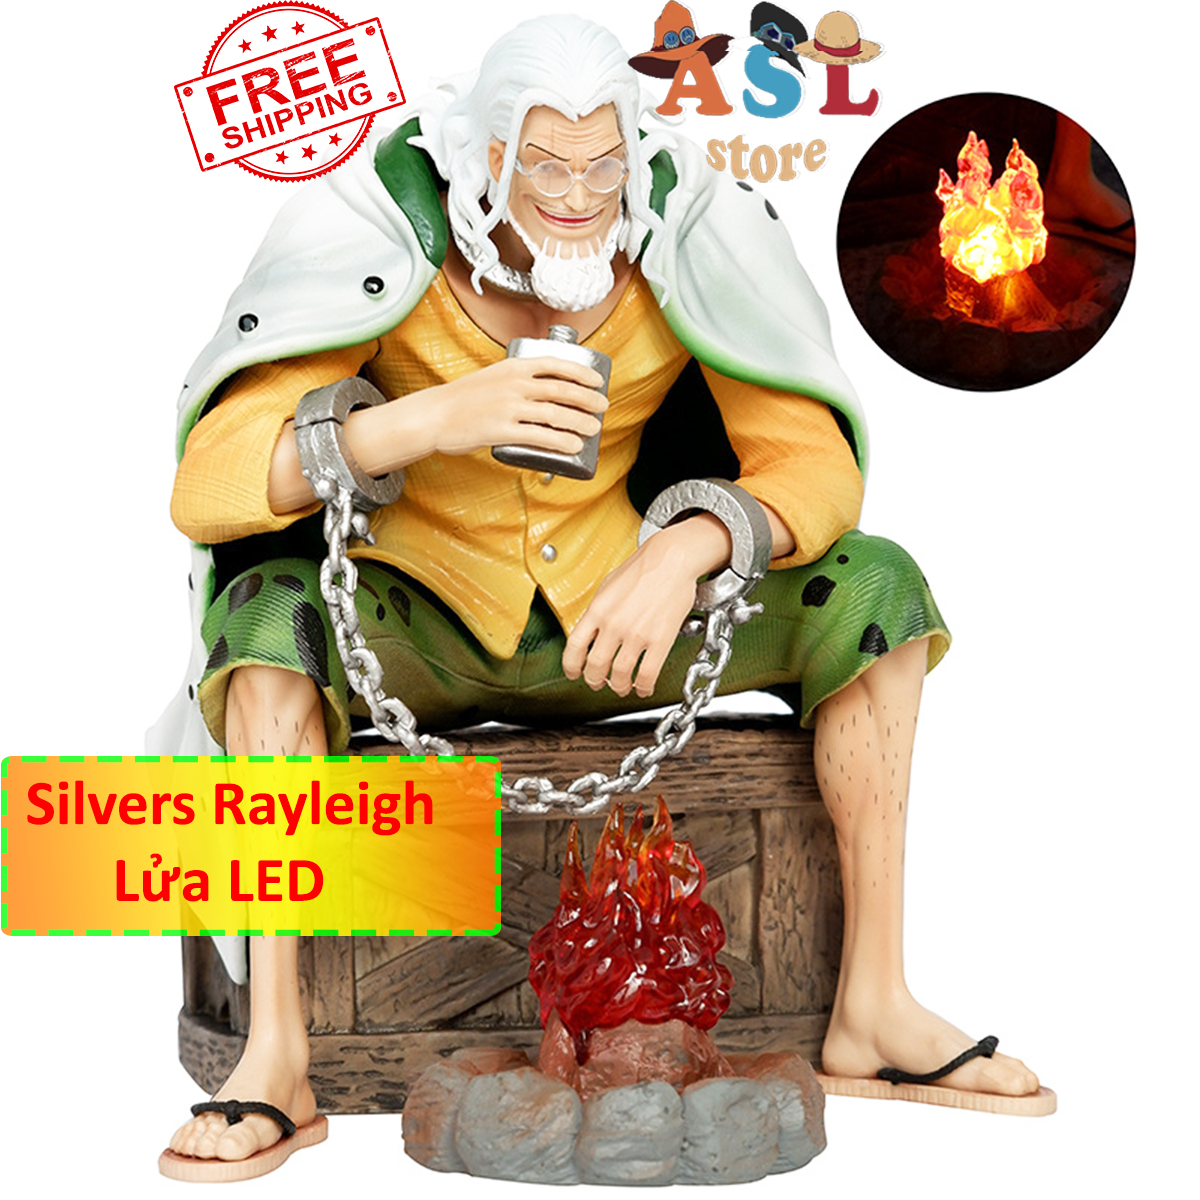 Mô Hình One Piece Silvers Rayleigh vua bóng tối - Cao 15,5cm + xích tay + bếp lửa LED + thùng gỗ  ASL Store